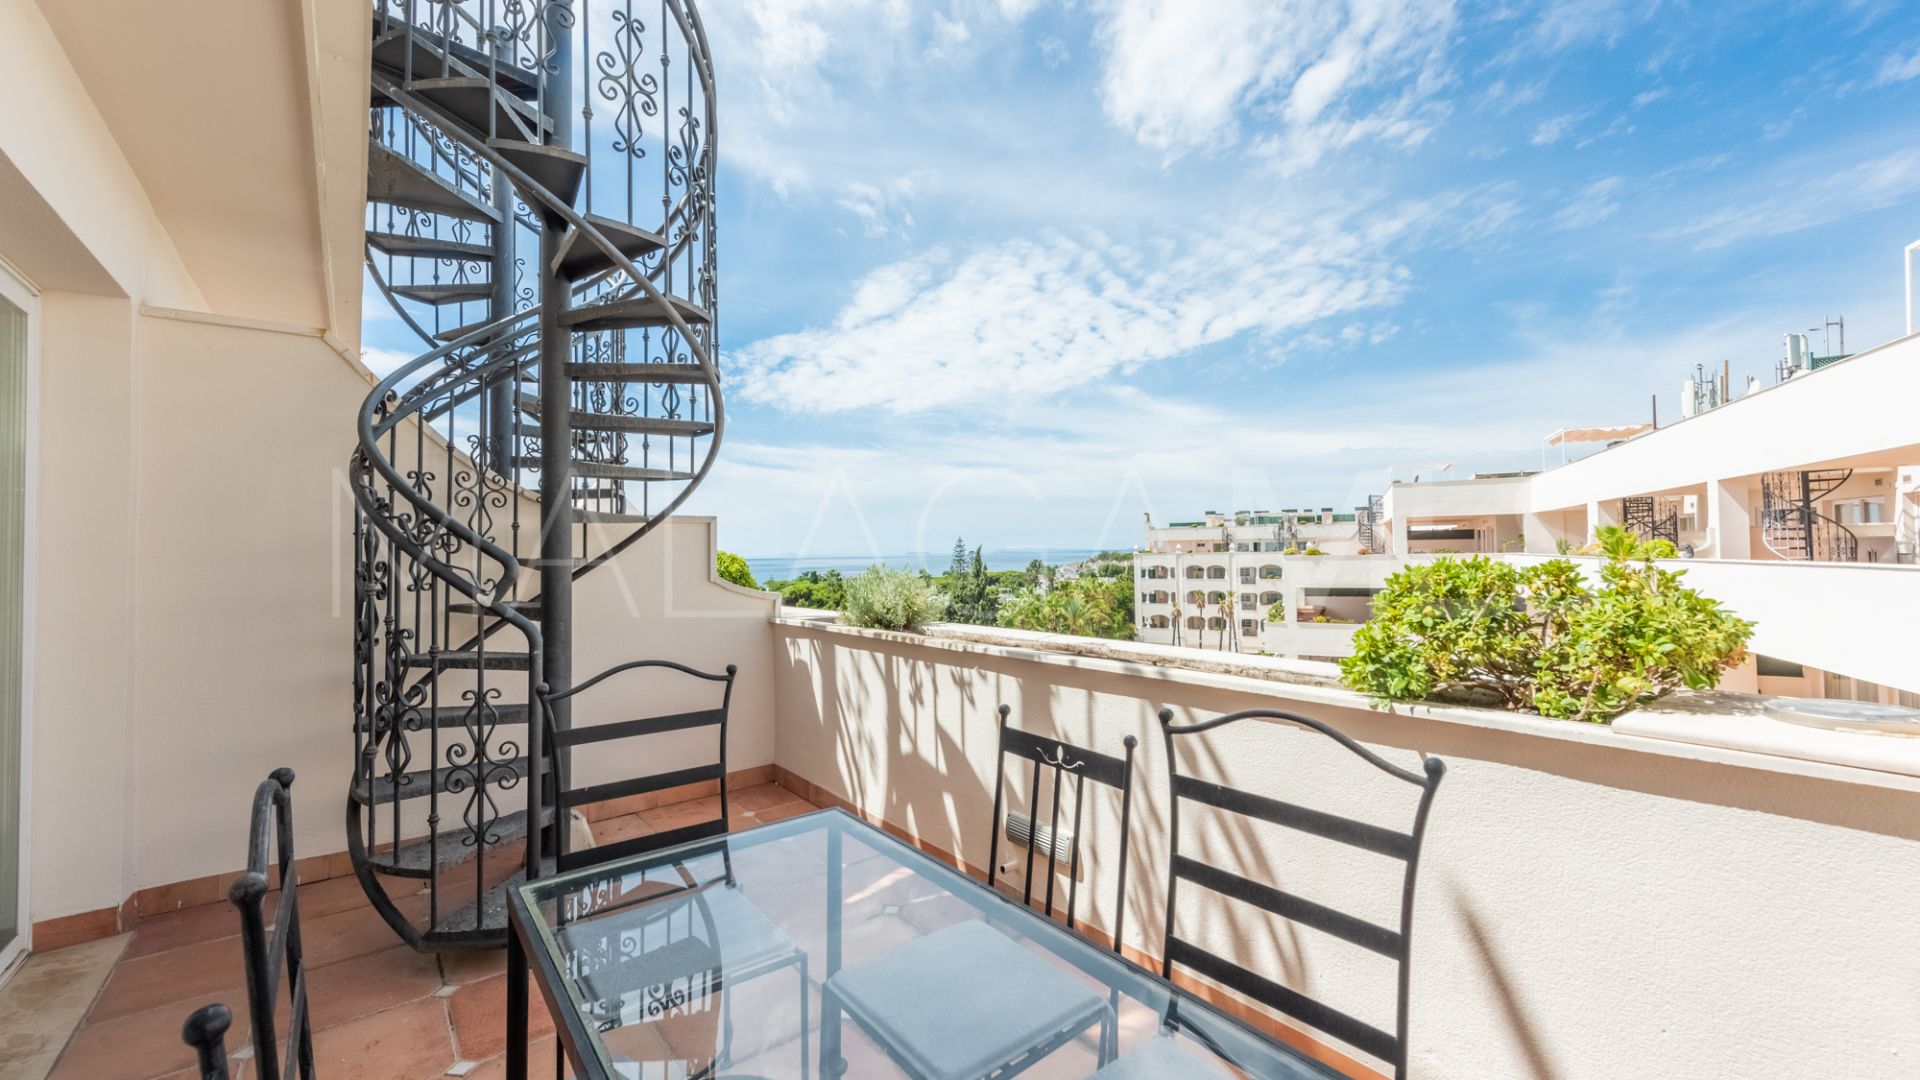 For sale Guadalpin Suites duplex penthouse